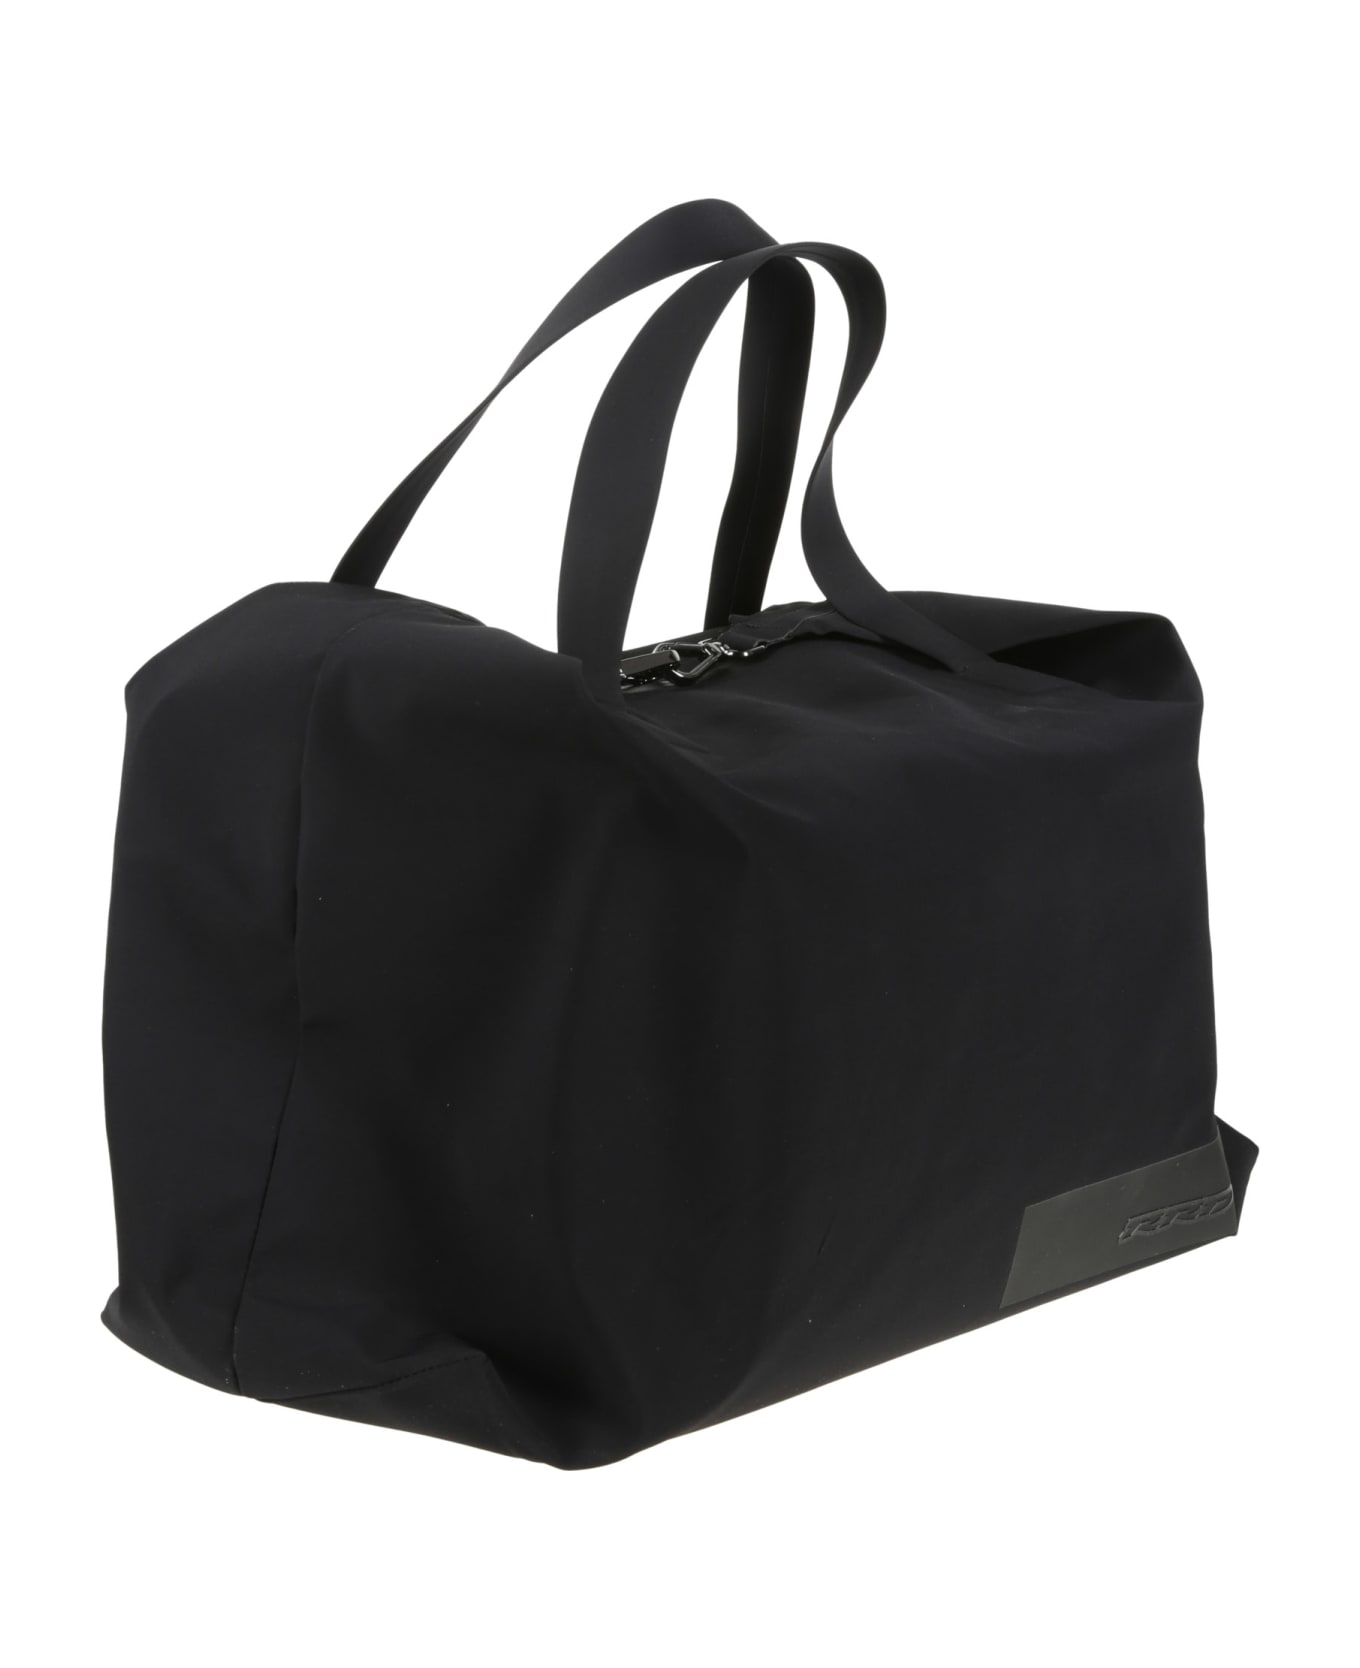 RRD - Roberto Ricci Design Techno Revo Bag - Black